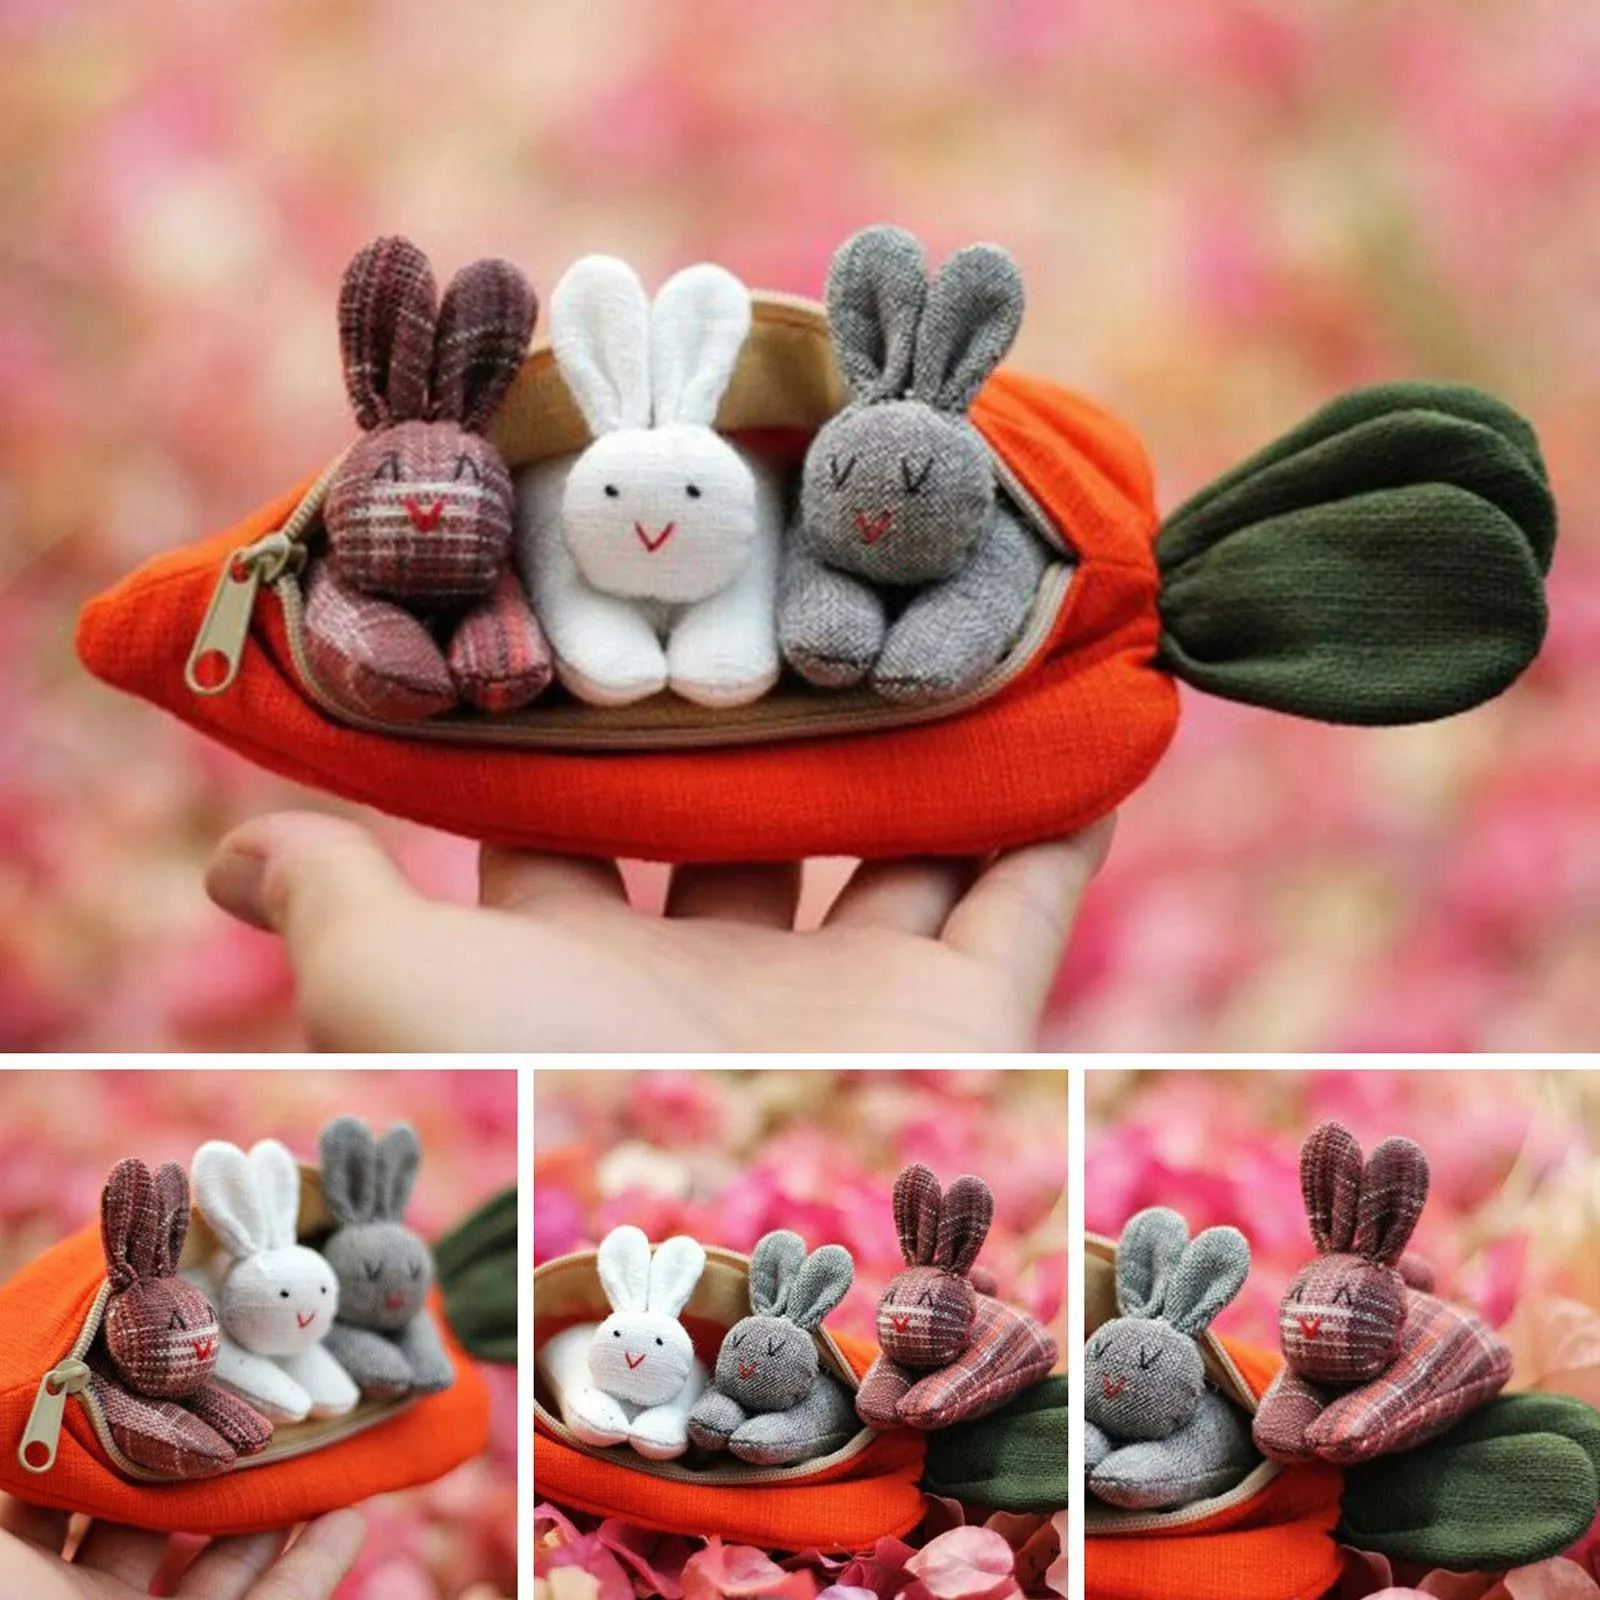 

3 кролика в кошелек с морковкой, пасхальный подарок для детей, домашнее праздничное настольное украшение с милым Кроликом, лучший подарок дл...